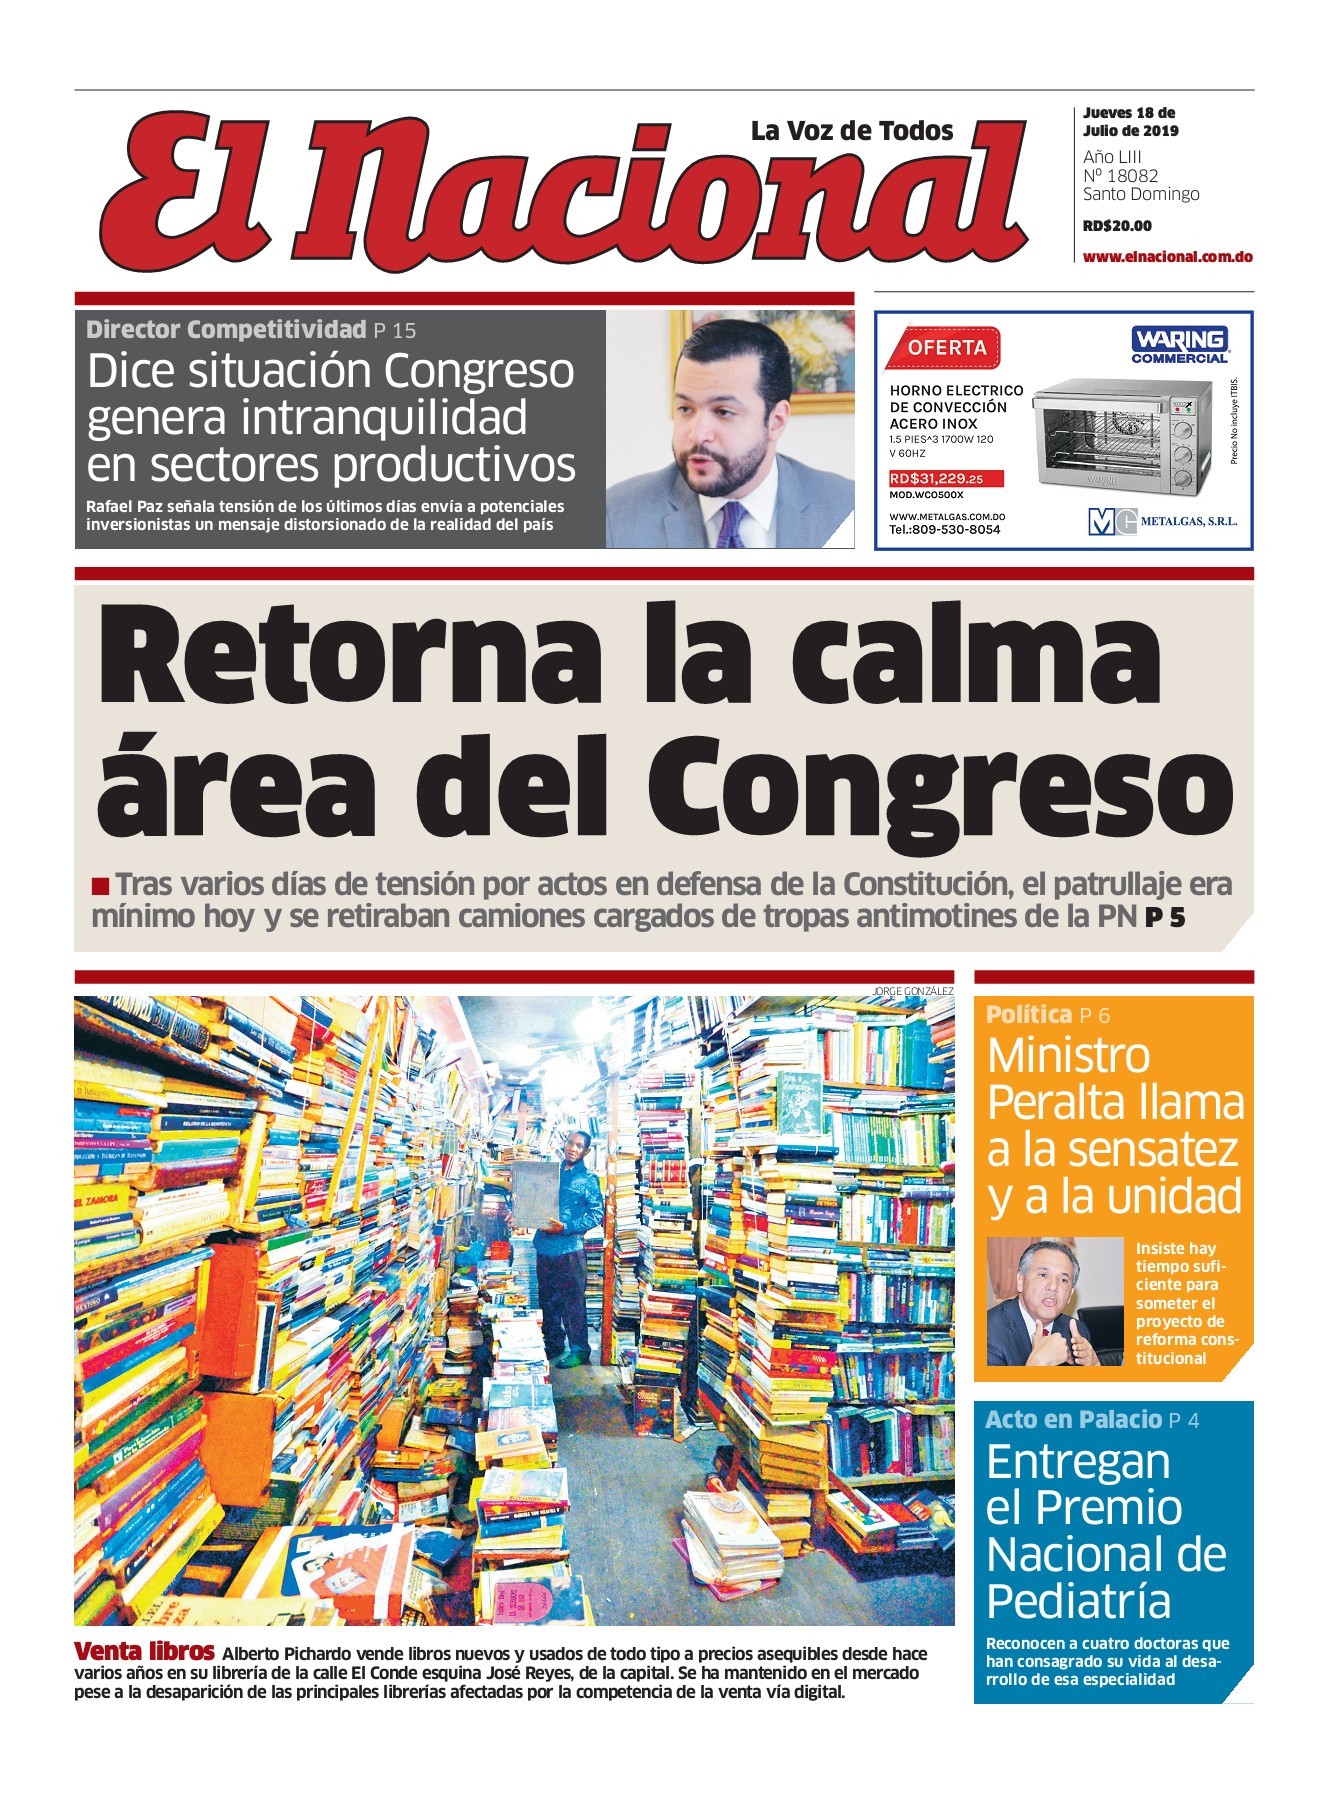 Portada Periódico El Nacional, Jueves 18 de Julio, 2019